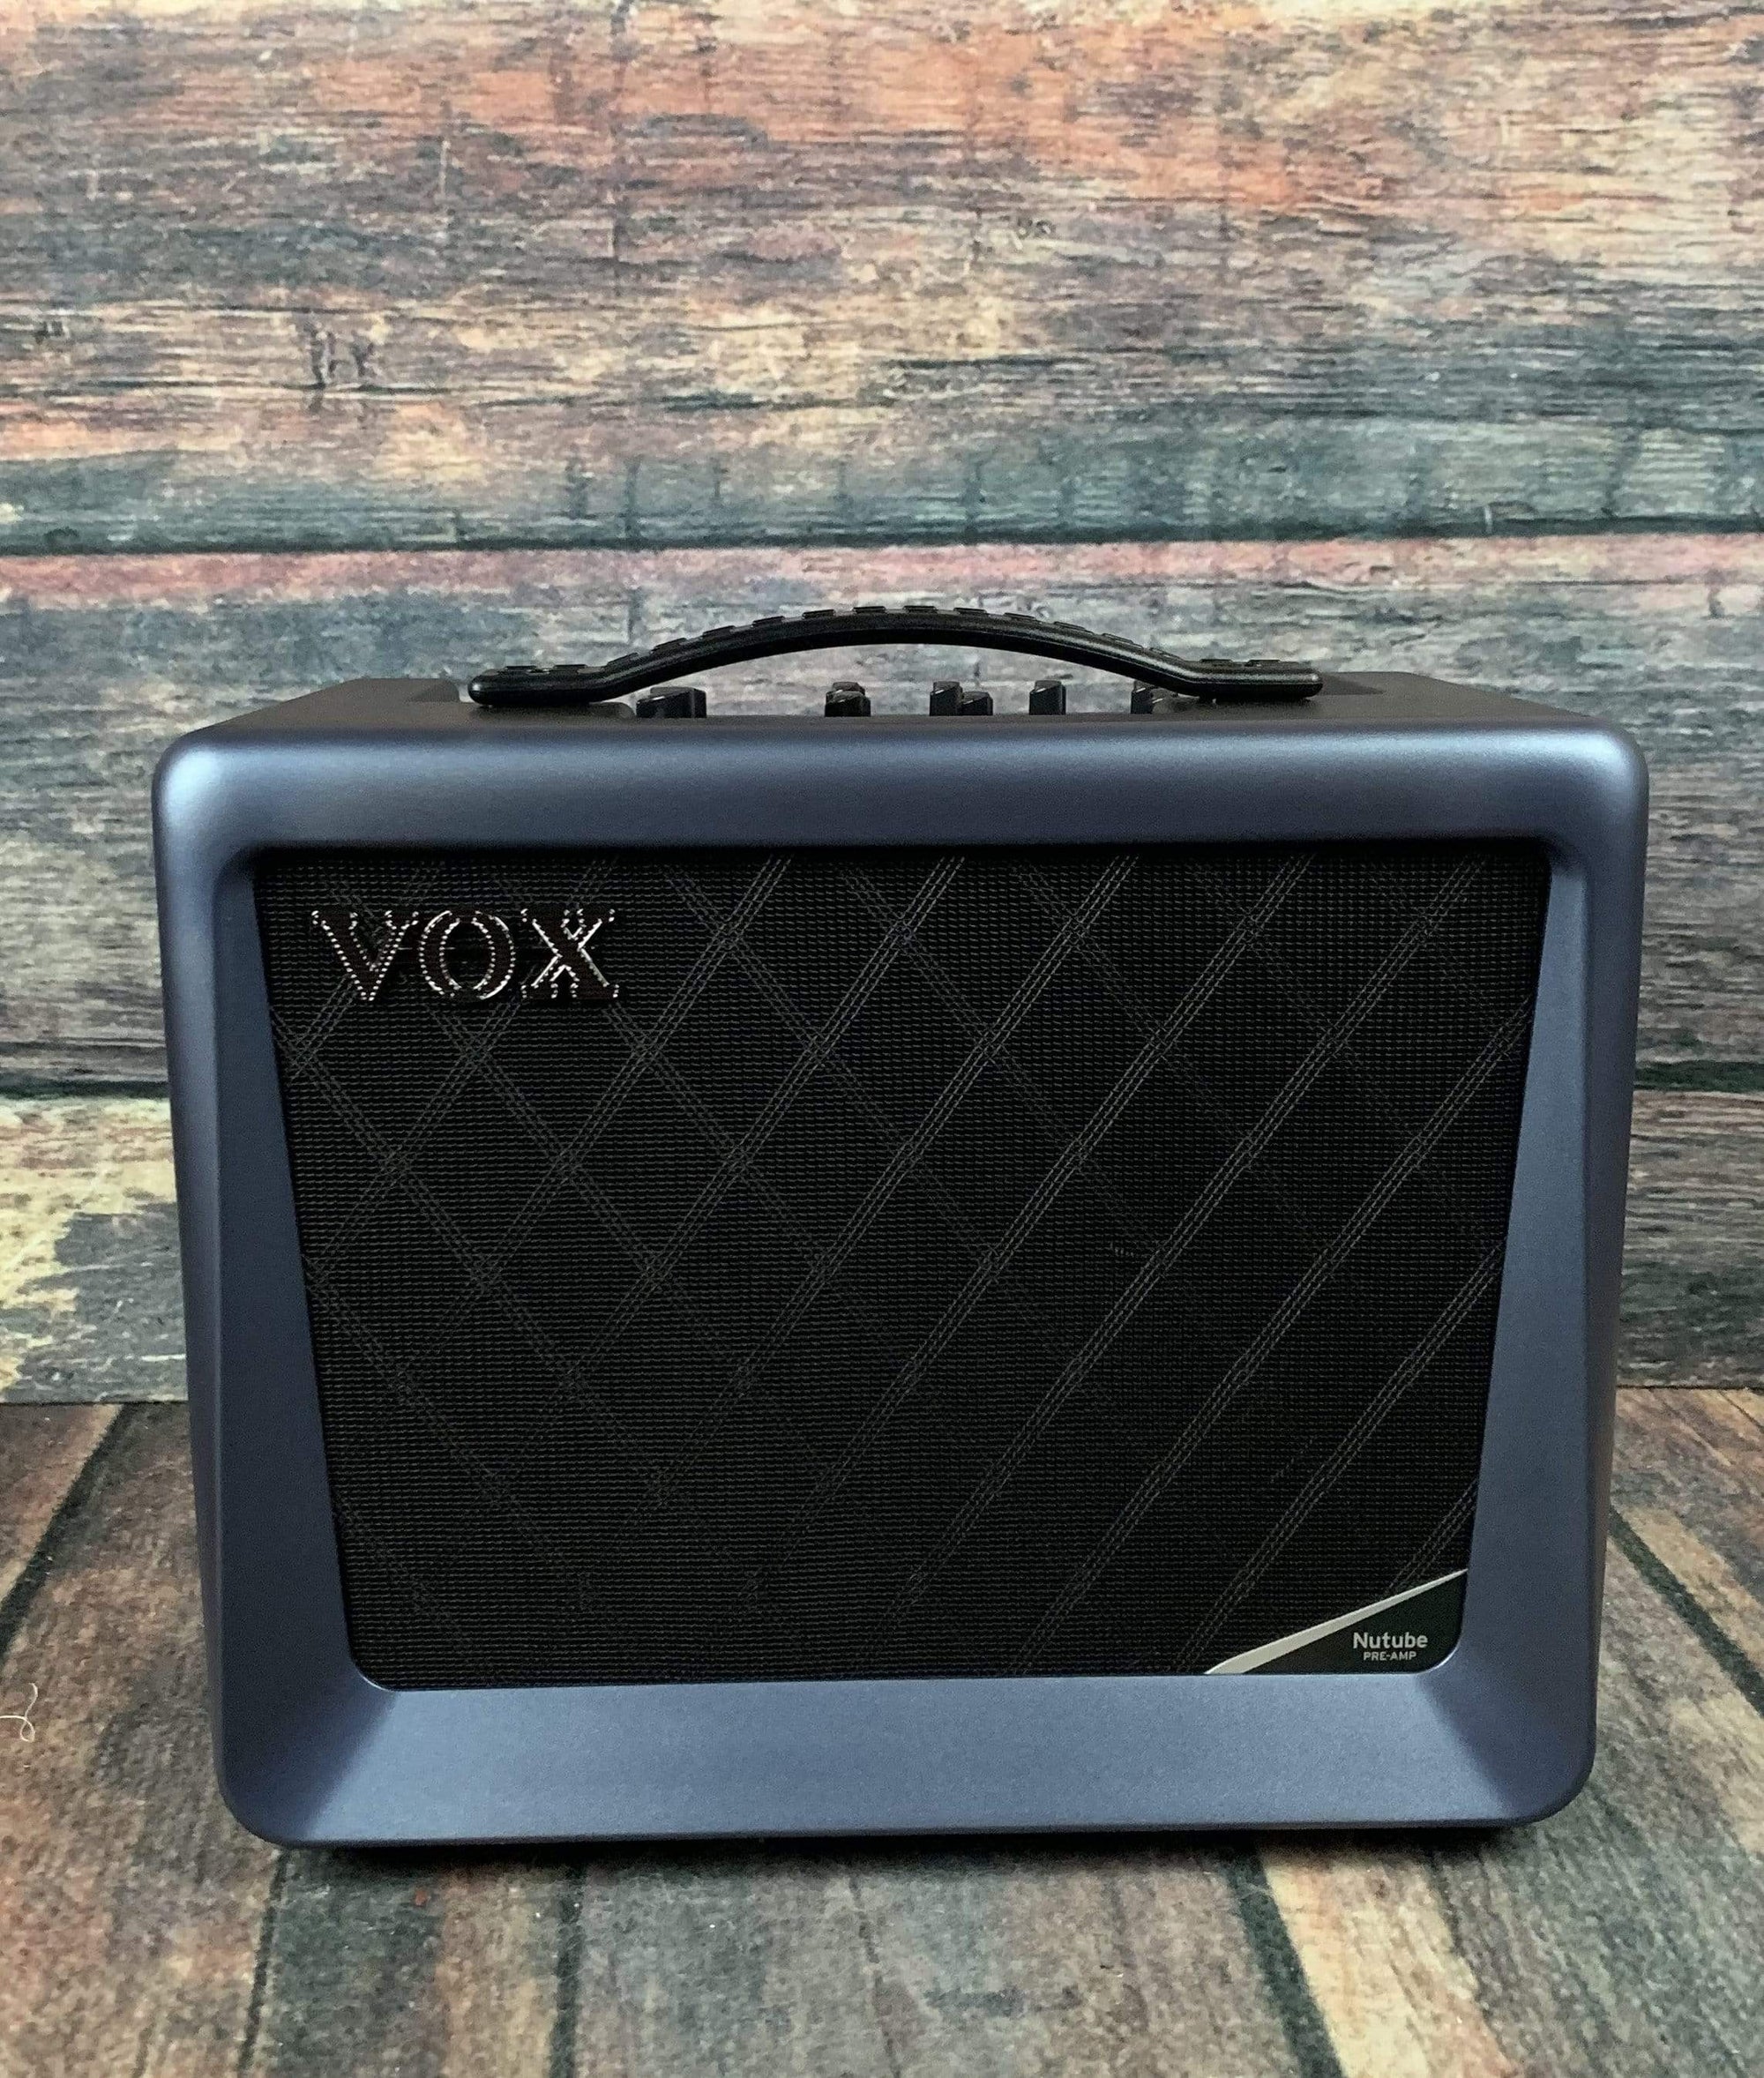 Vox Amp Vox VX50-GTV 50 Watt Modeling Amp w/ Nutube